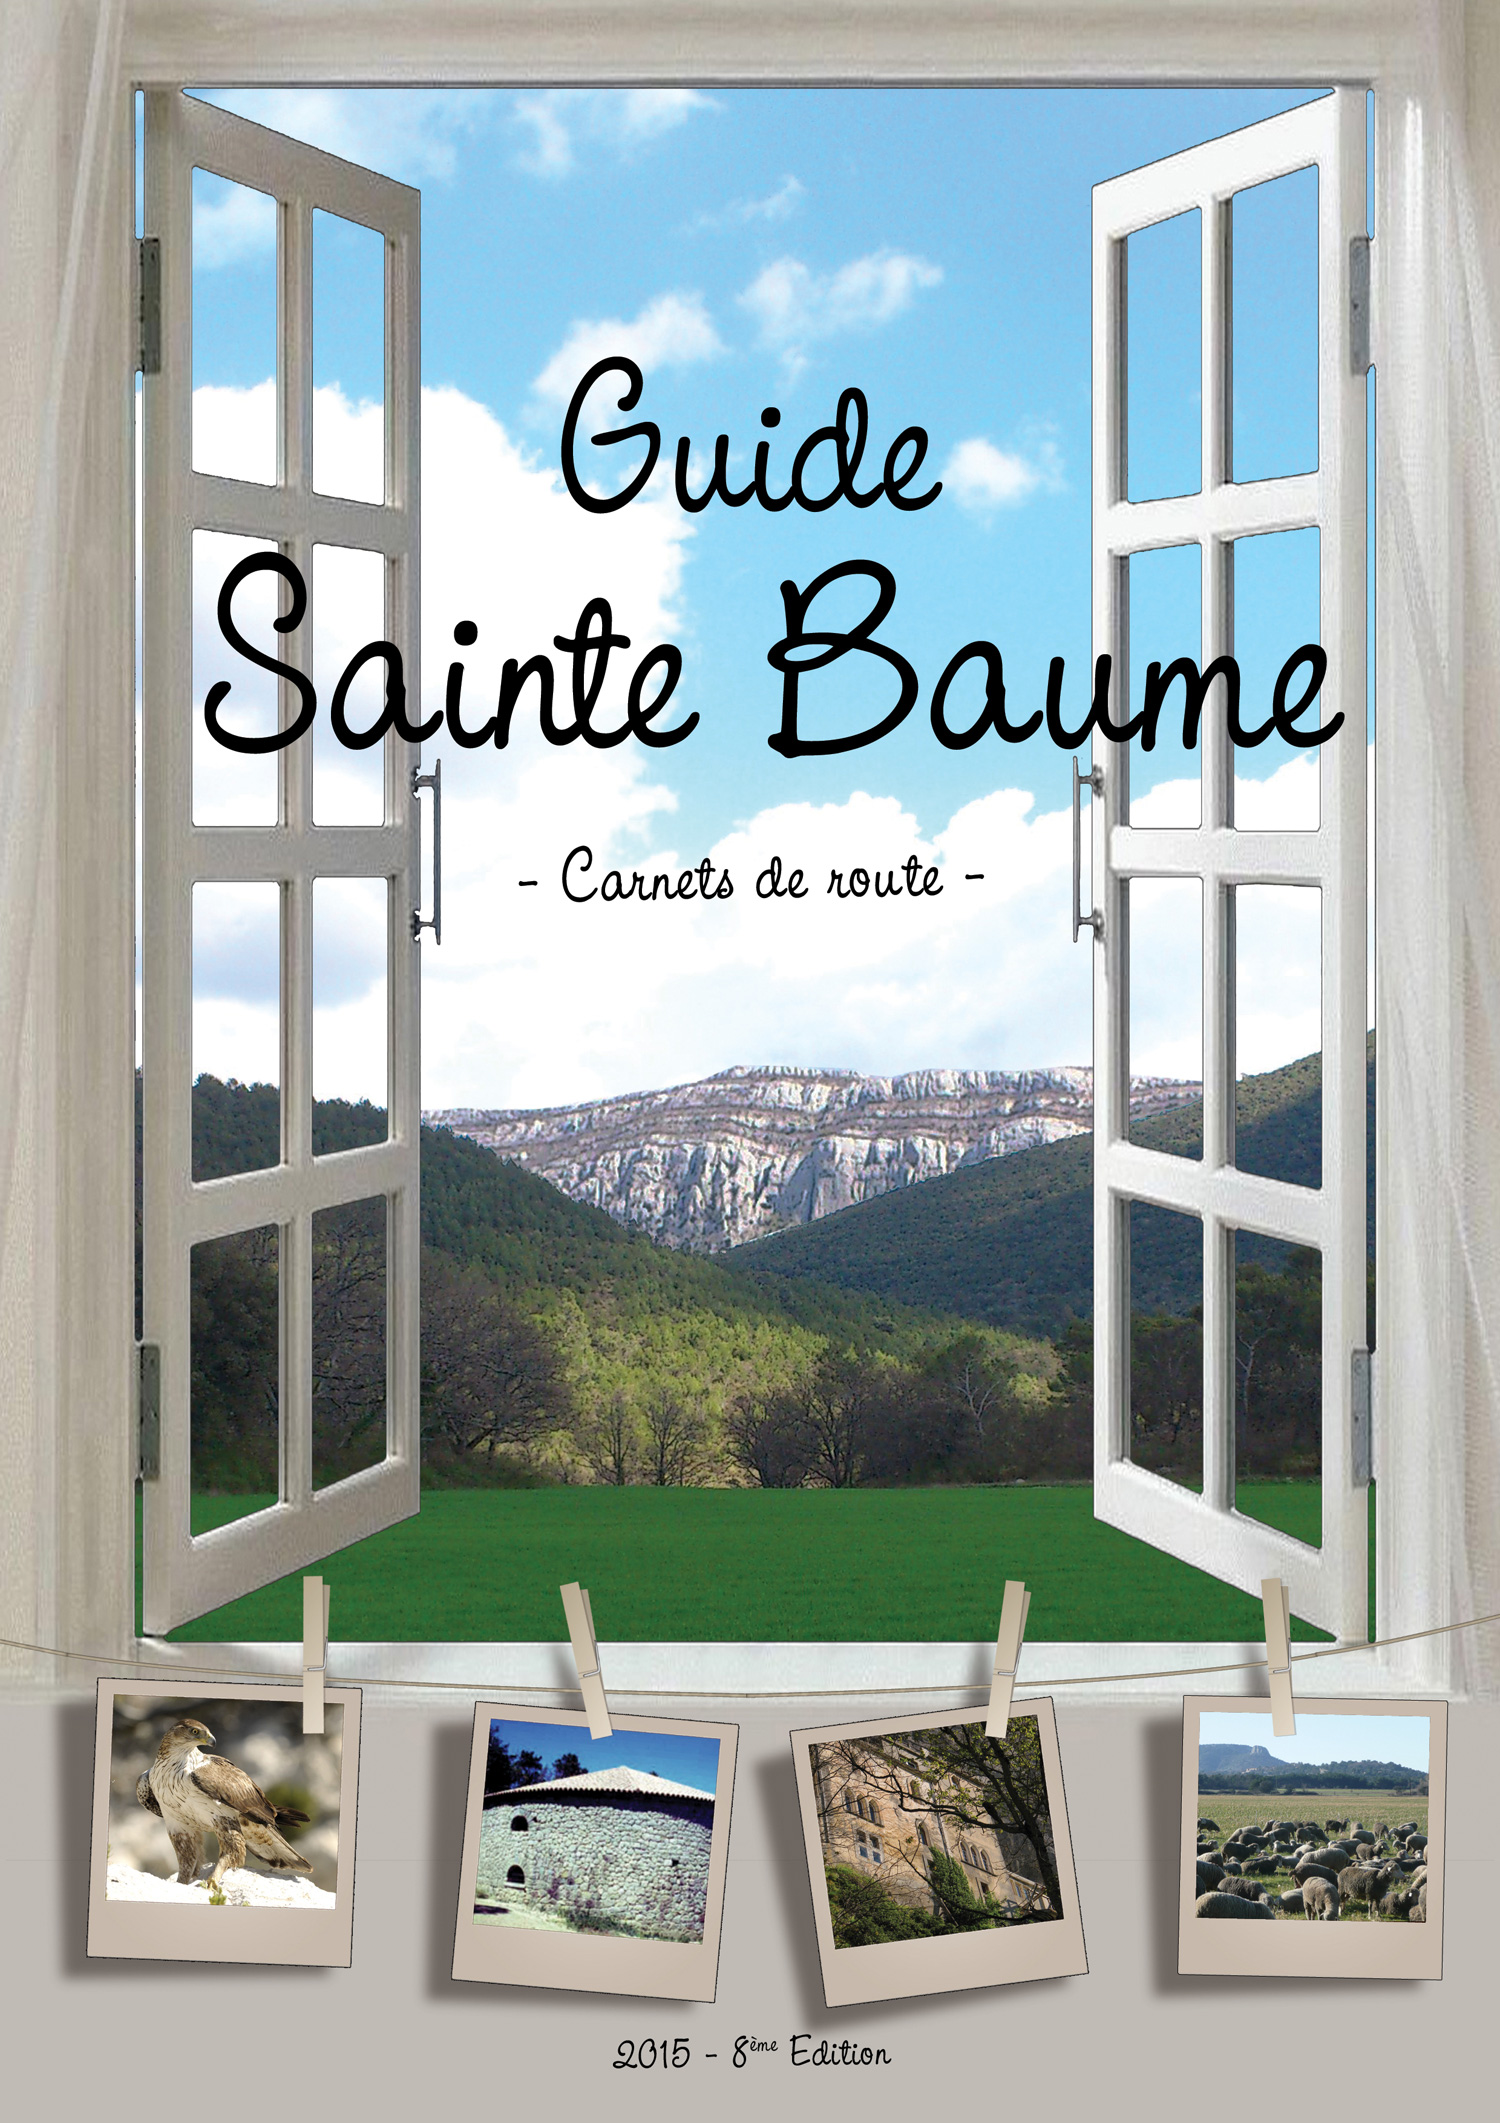 Le Guide Sainte-Baume, un support responsable